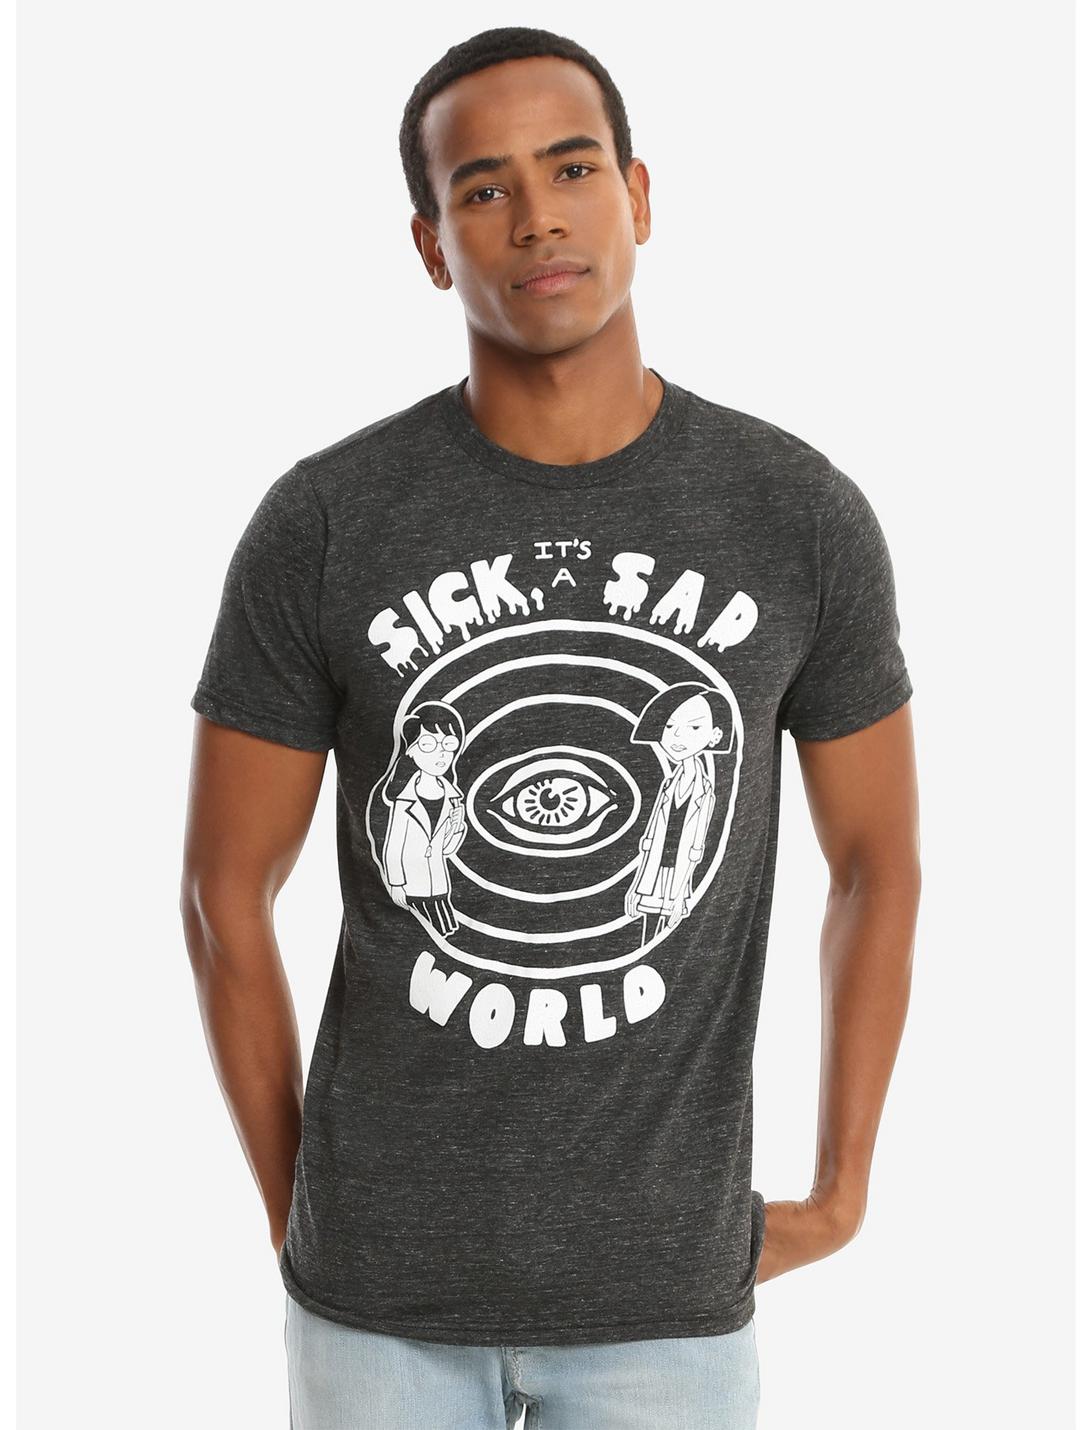 Daria Sick Sad World T-Shirt, BLACK, hi-res